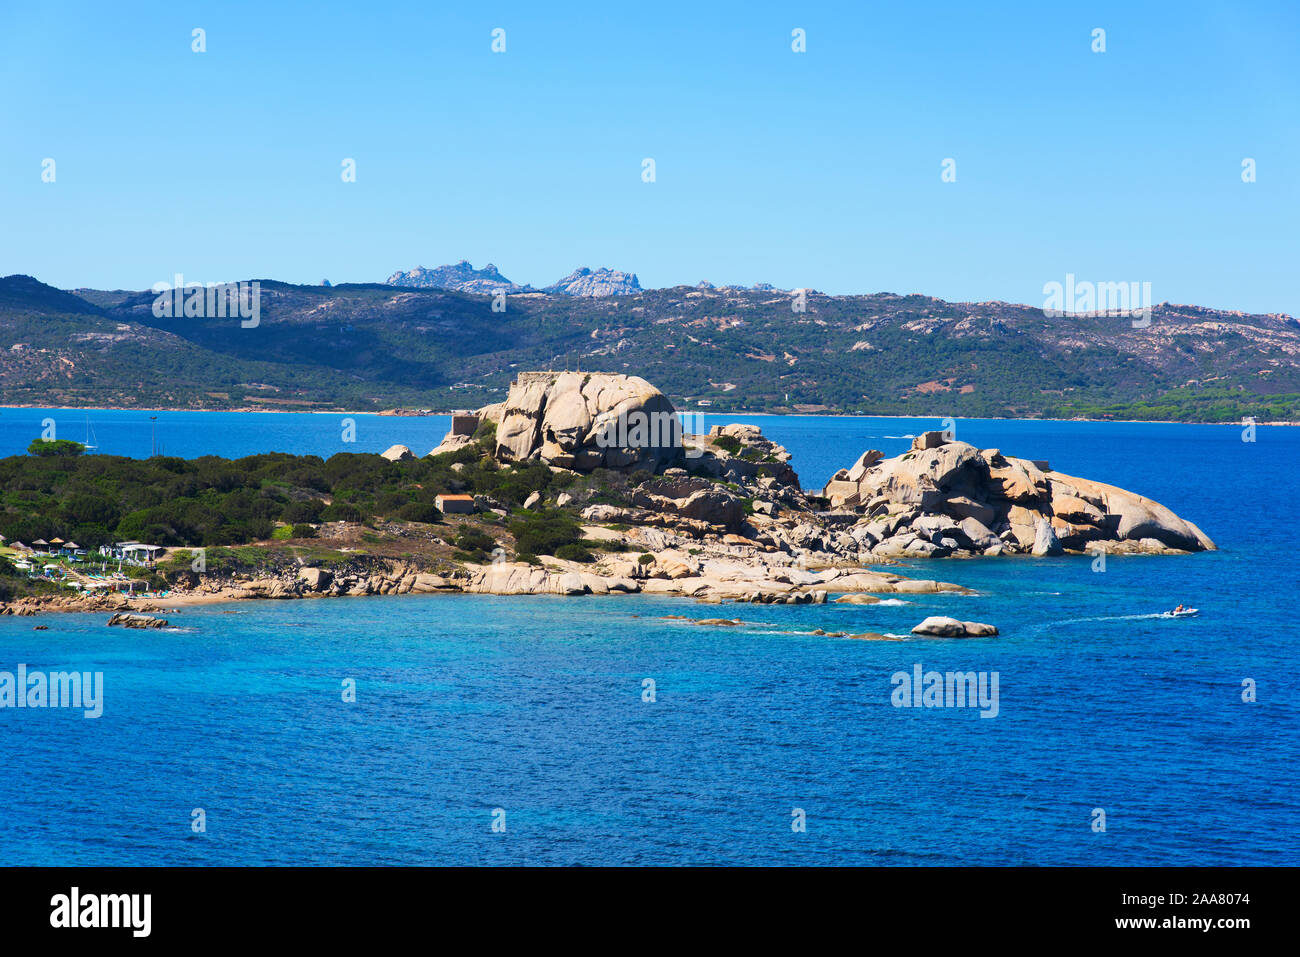 BAJA Sardinia, Italia - 21 settembre 2017: una vista della costa di Baja Sardinia in Costa Smeralda, in Sardegna, Italia, e alcune persone sunb Foto Stock